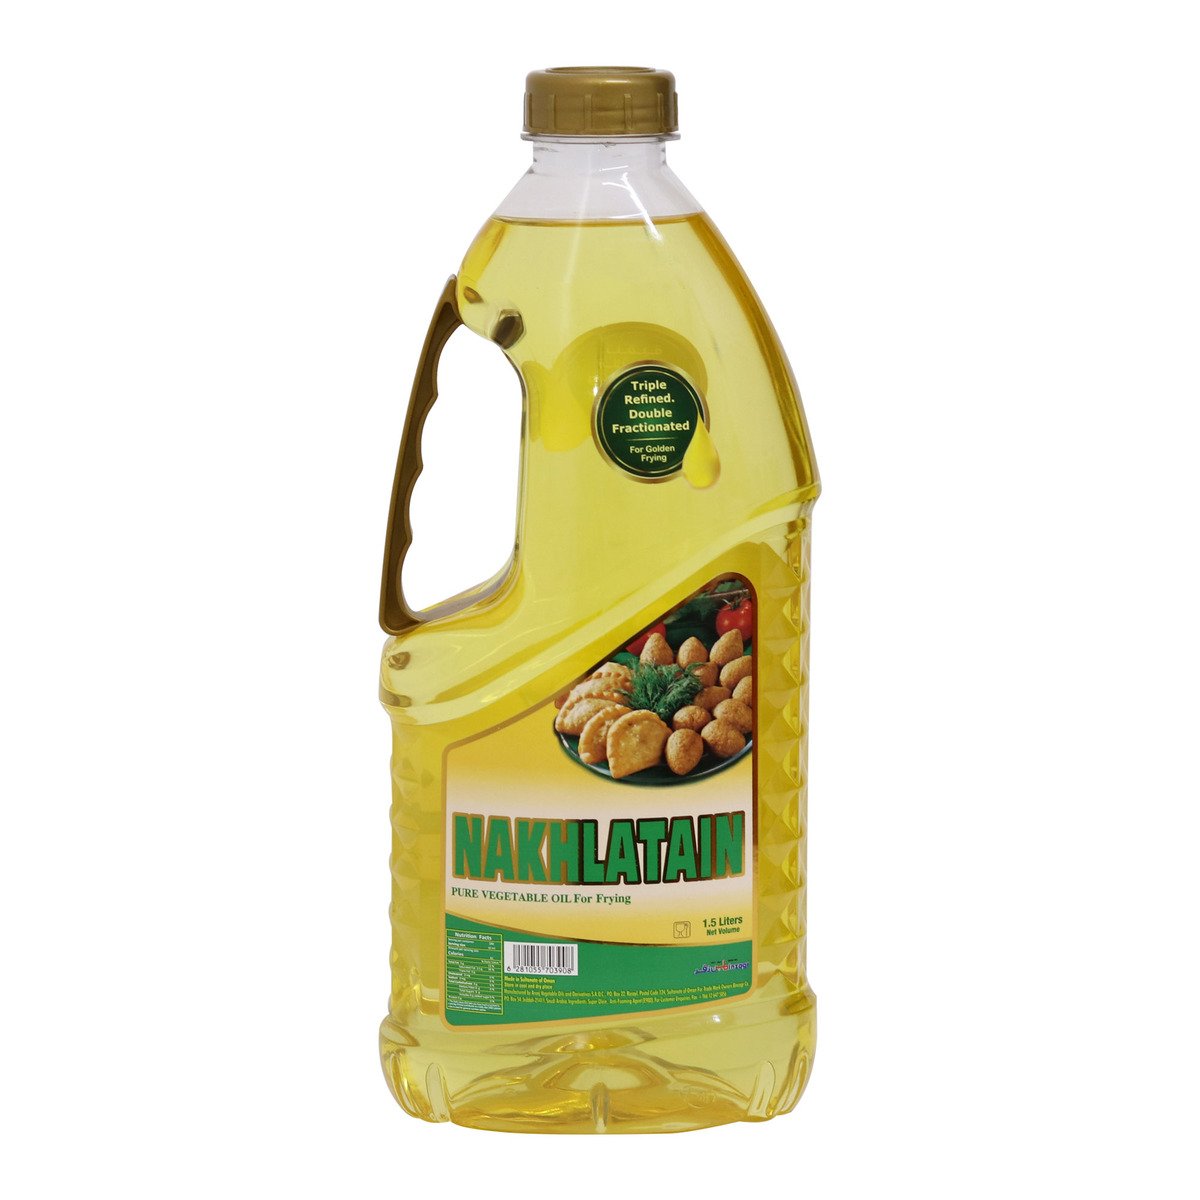 اشتري قم بشراء نخيل زيت نباتي صافي 1.5 لتر Online at Best Price من الموقع - من لولو هايبر ماركت Vegetable Oil في السعودية